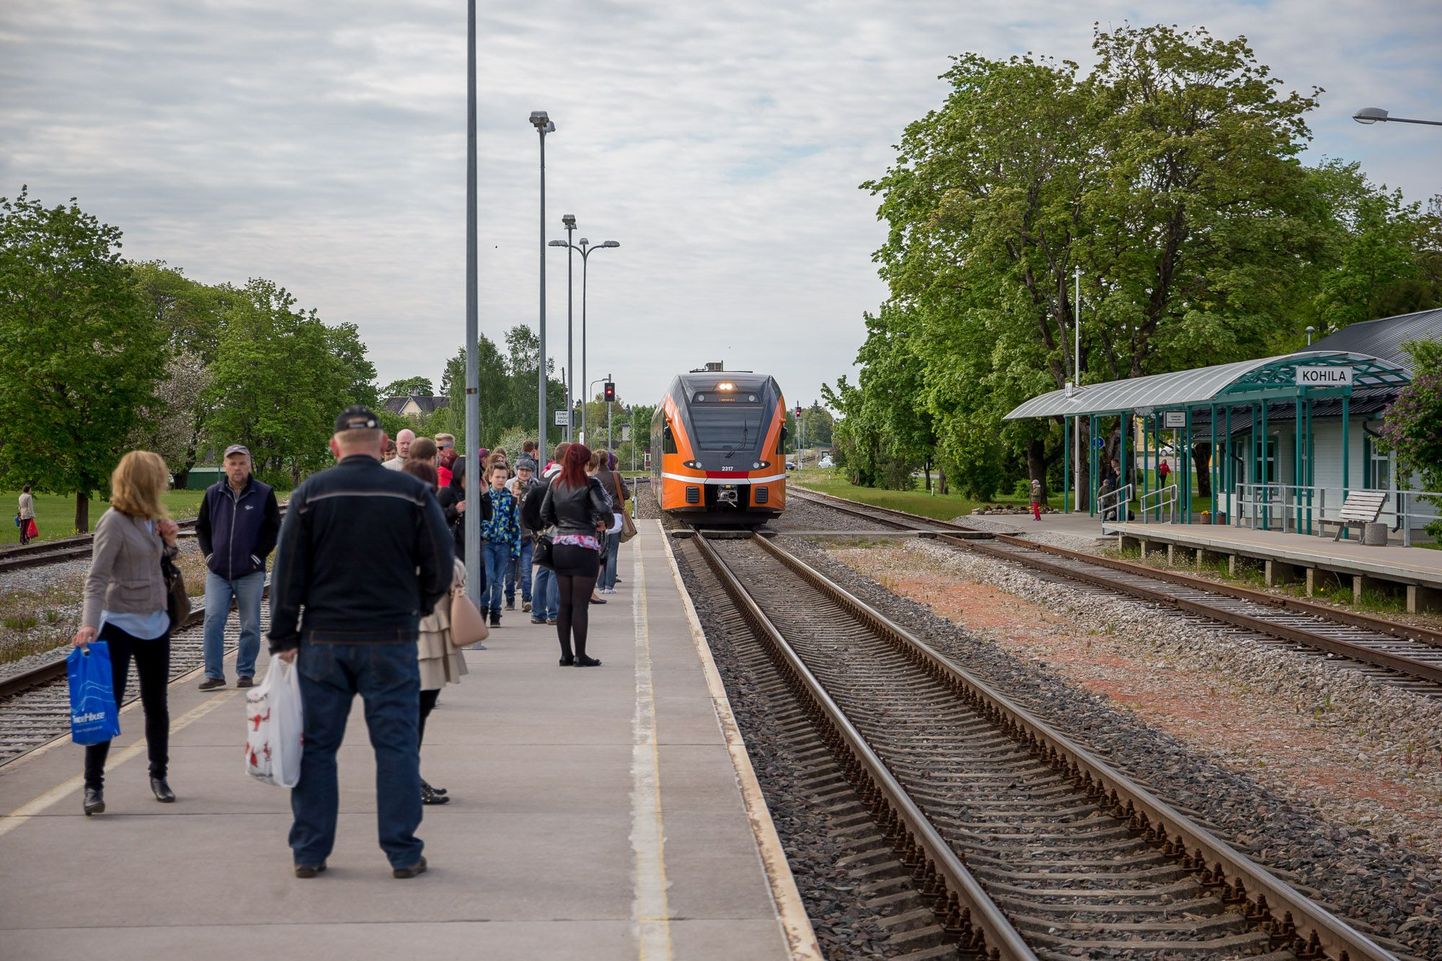 Kohila jaamas tekkis ohtlik olukord, kui vedurijuht eiras keelavat punast tuld ja hakkas vastu sõitma Tallinna suunas tulevale rongile.